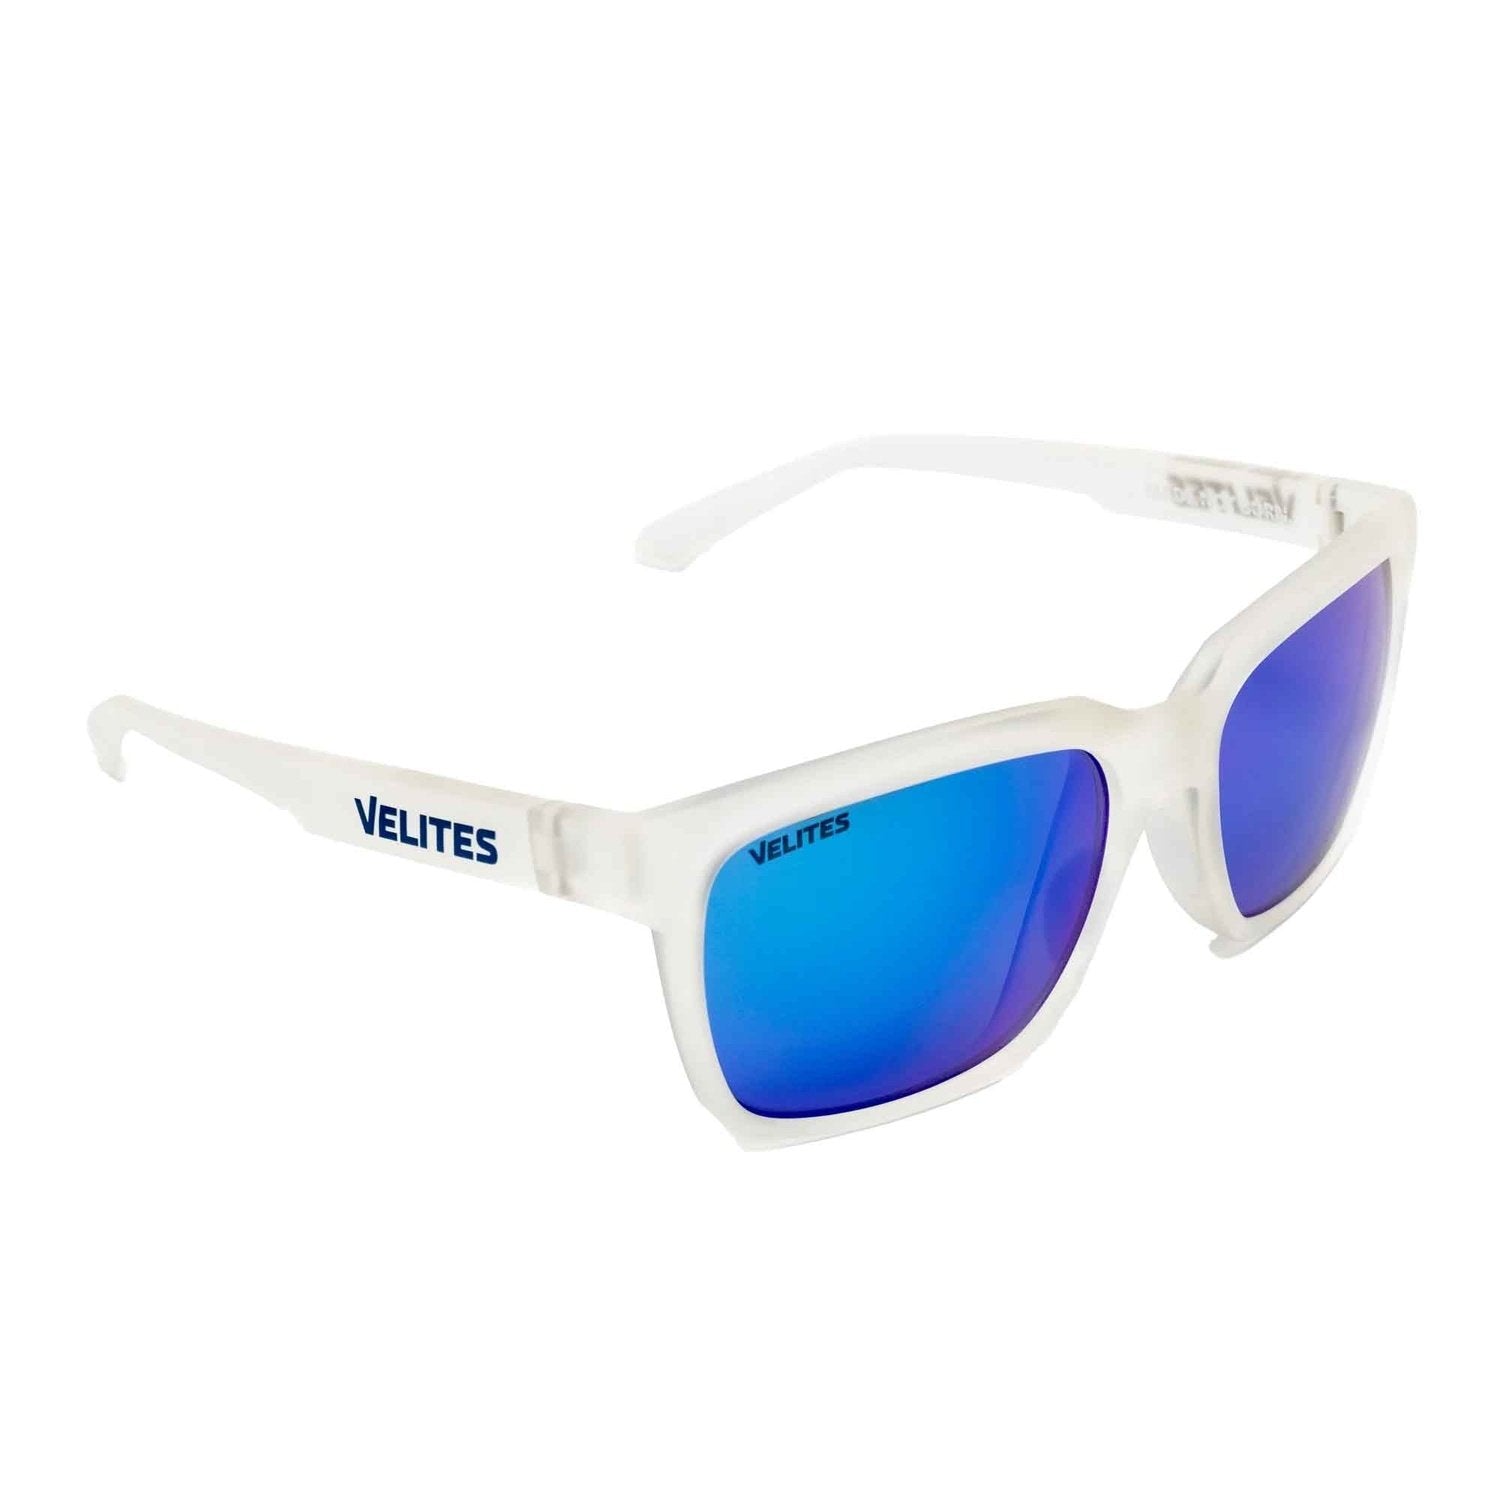 Velites Sonnenbrille "Urban Sport" Transparent Matt Blau kaufen bei HighPowered.ch